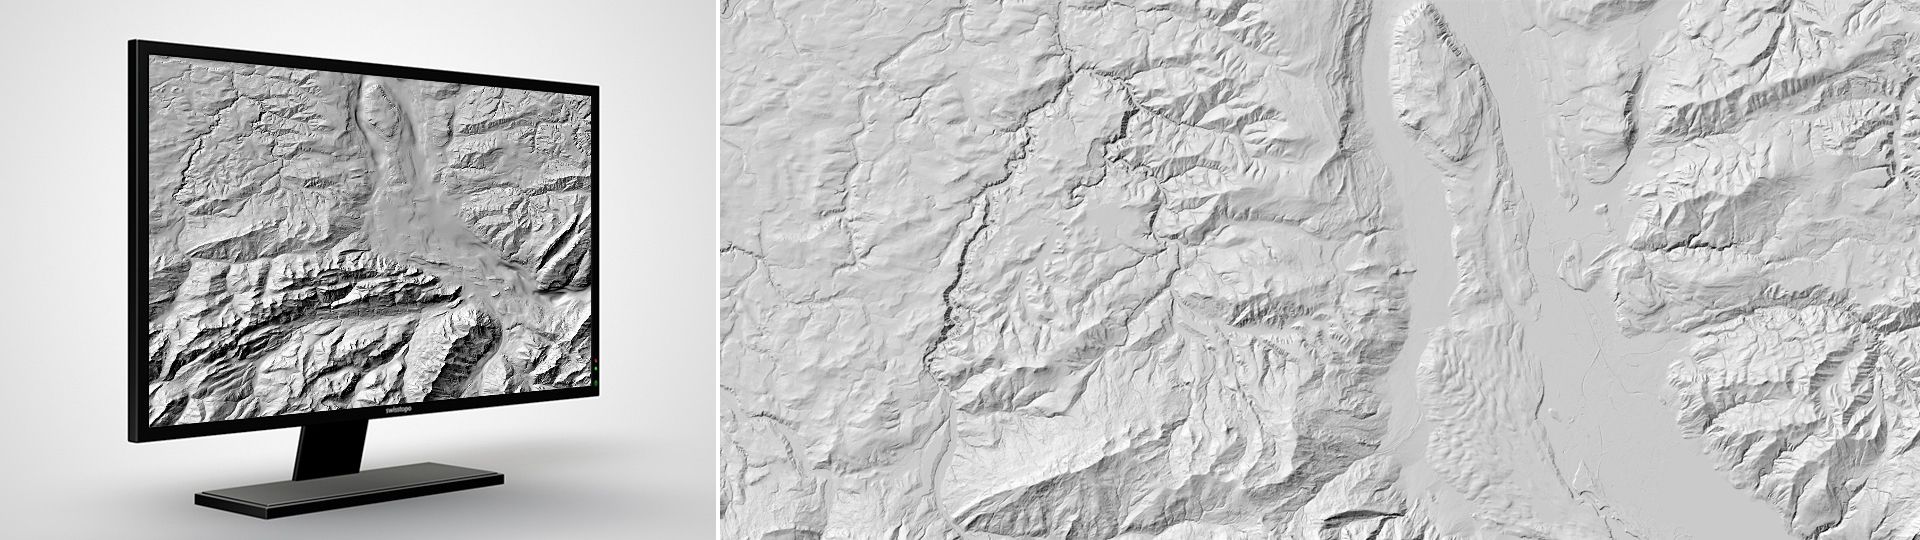 Höhenmodell der Felsoberfläche: Das digitale Höhenmodell der Felsoberfläche im Molassebecken und in den grossen Alpentälern